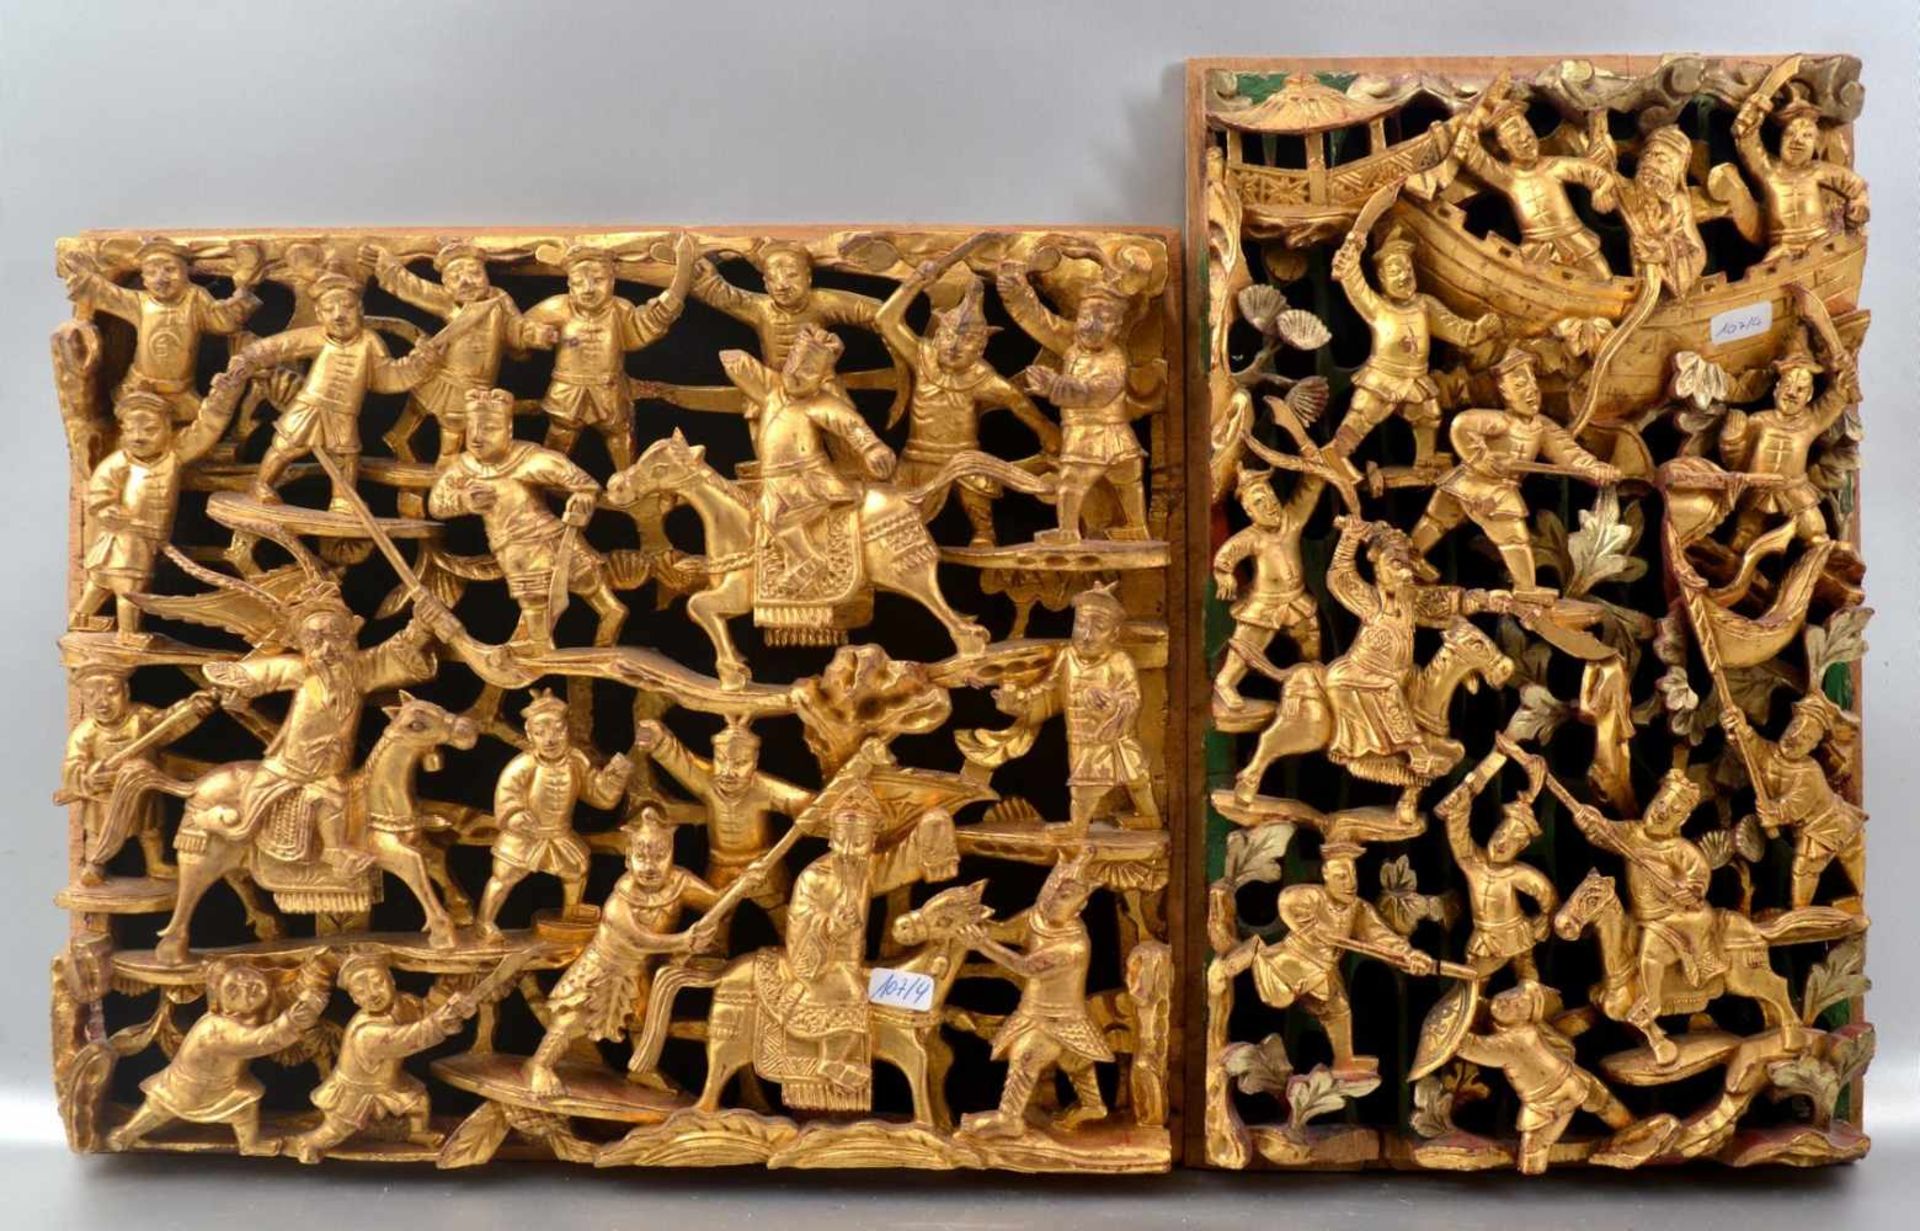 Zwei asiatische Verzierungen Hartholz geschnitzt, mit Kämpfern und Reitern, gold verziert, 32 X 27